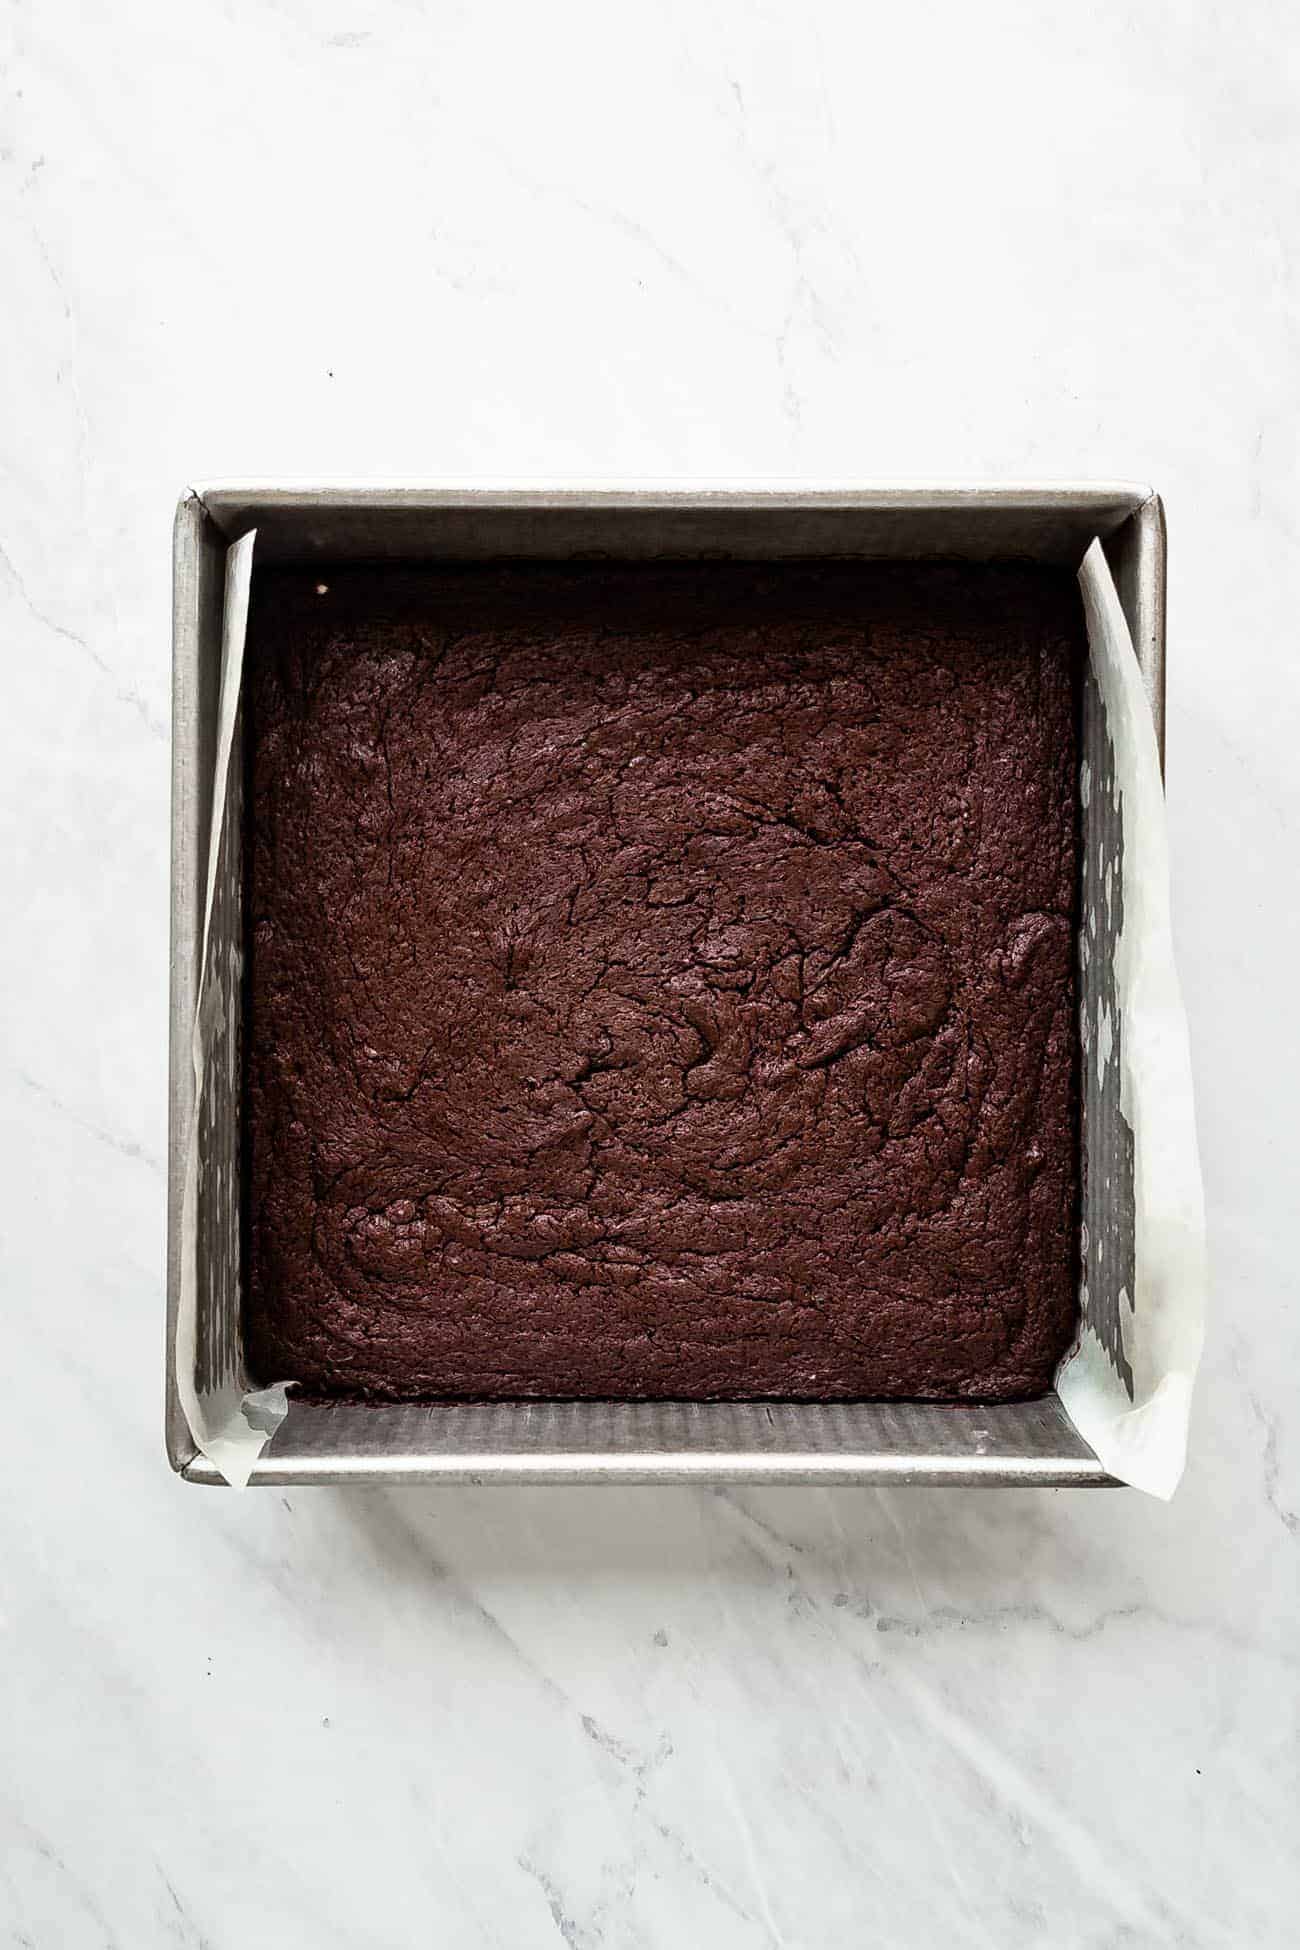 brownies in a baking pan before being cut